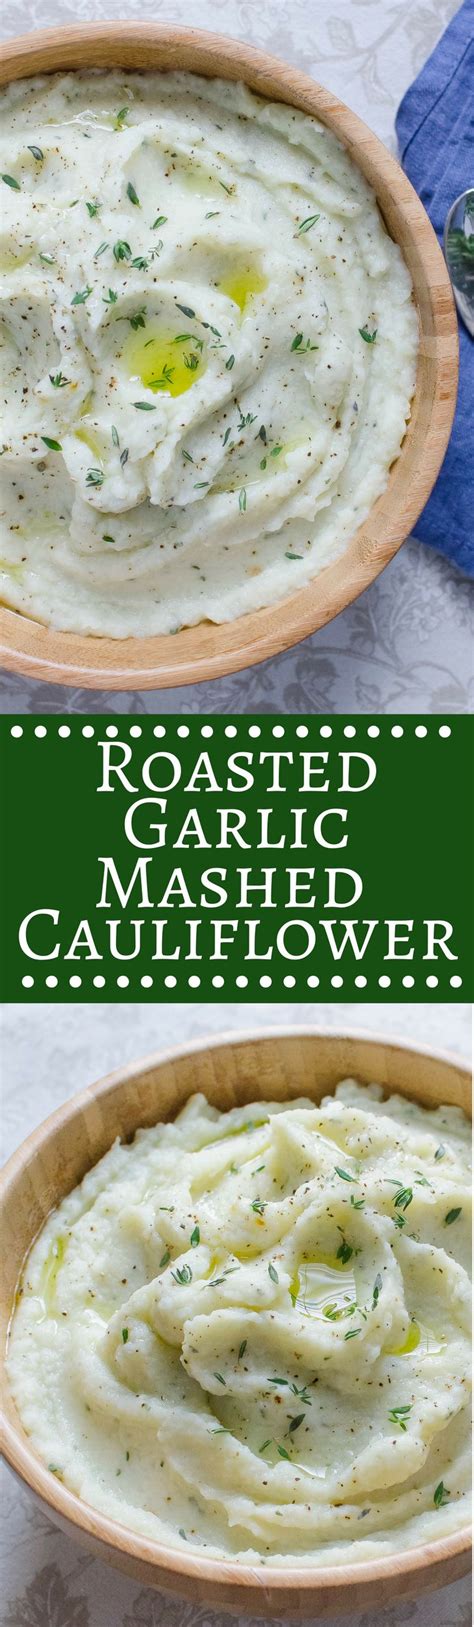 Mashed Cauliflower With Roasted Garlic Recipe Mashed